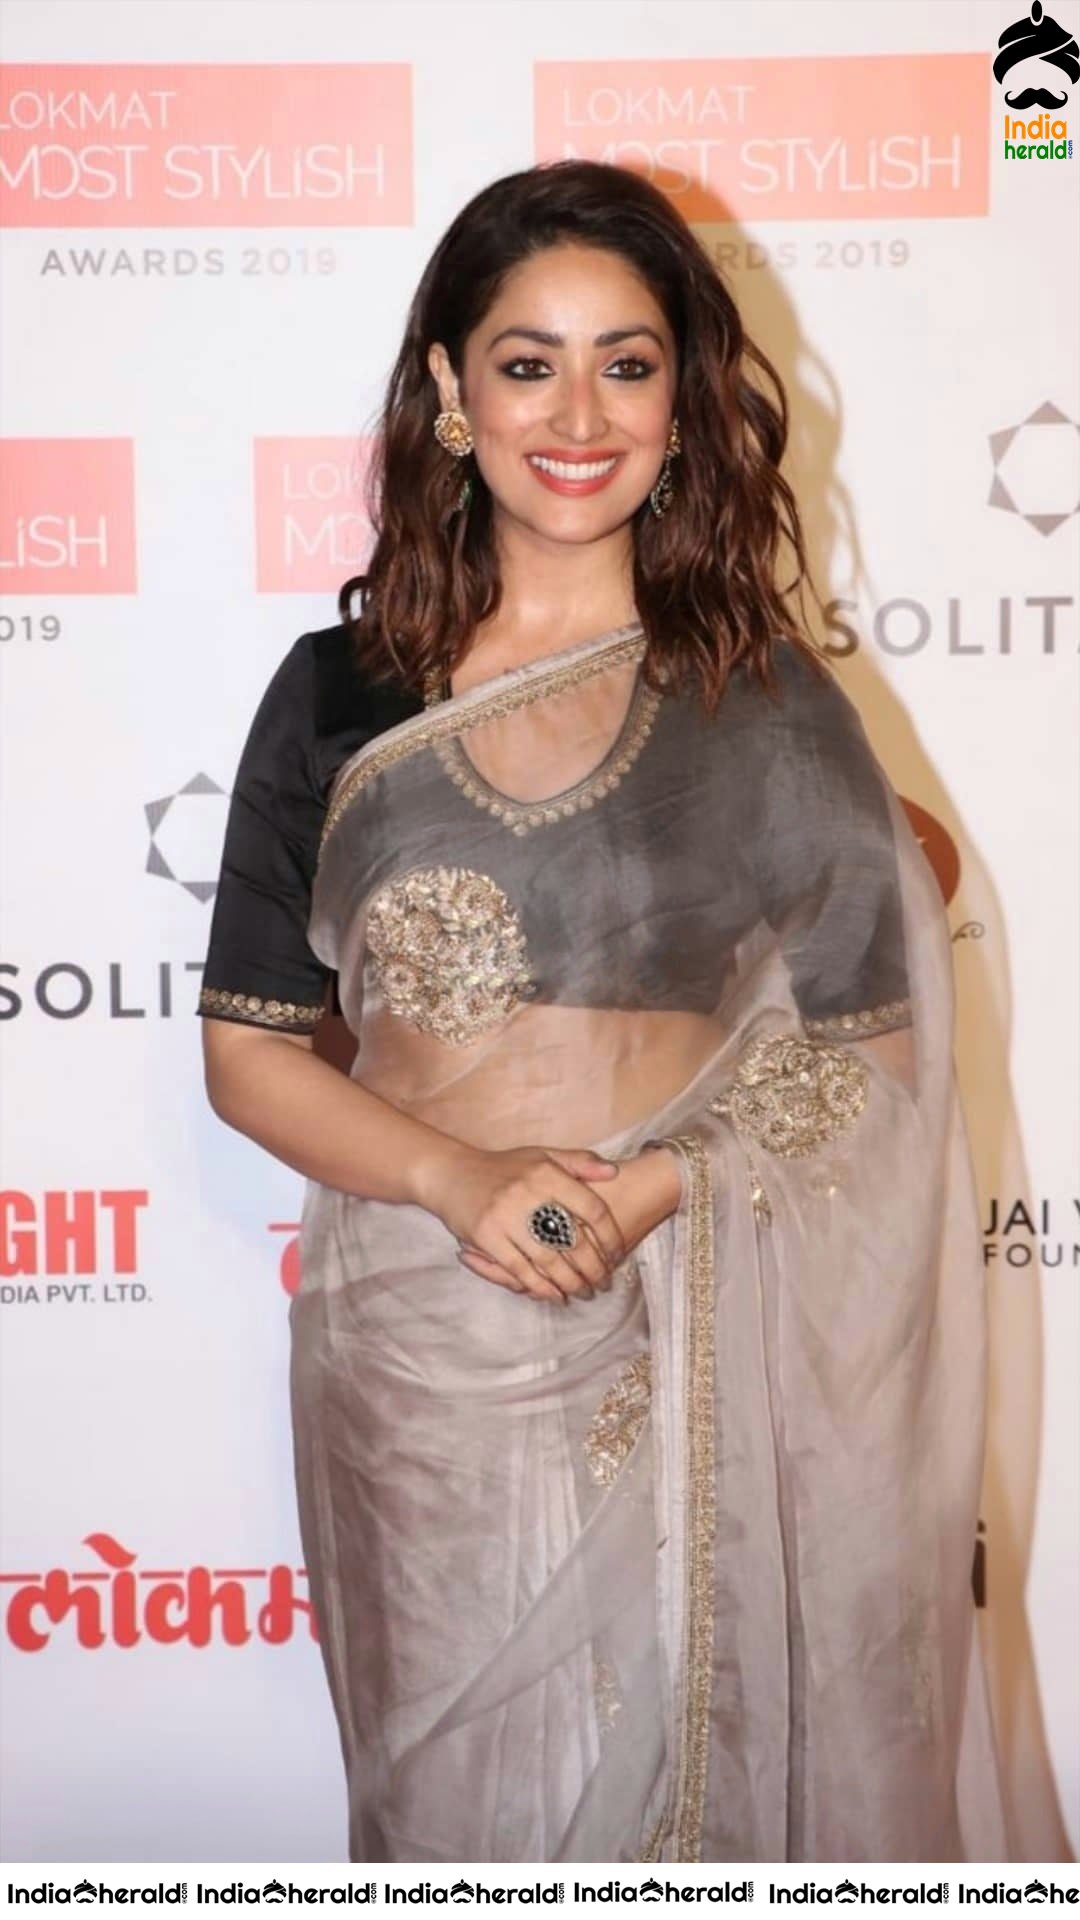 Yami Gautam Hot in Transparent Saree at Lokmat Most Stylish awards 2019 Set 2